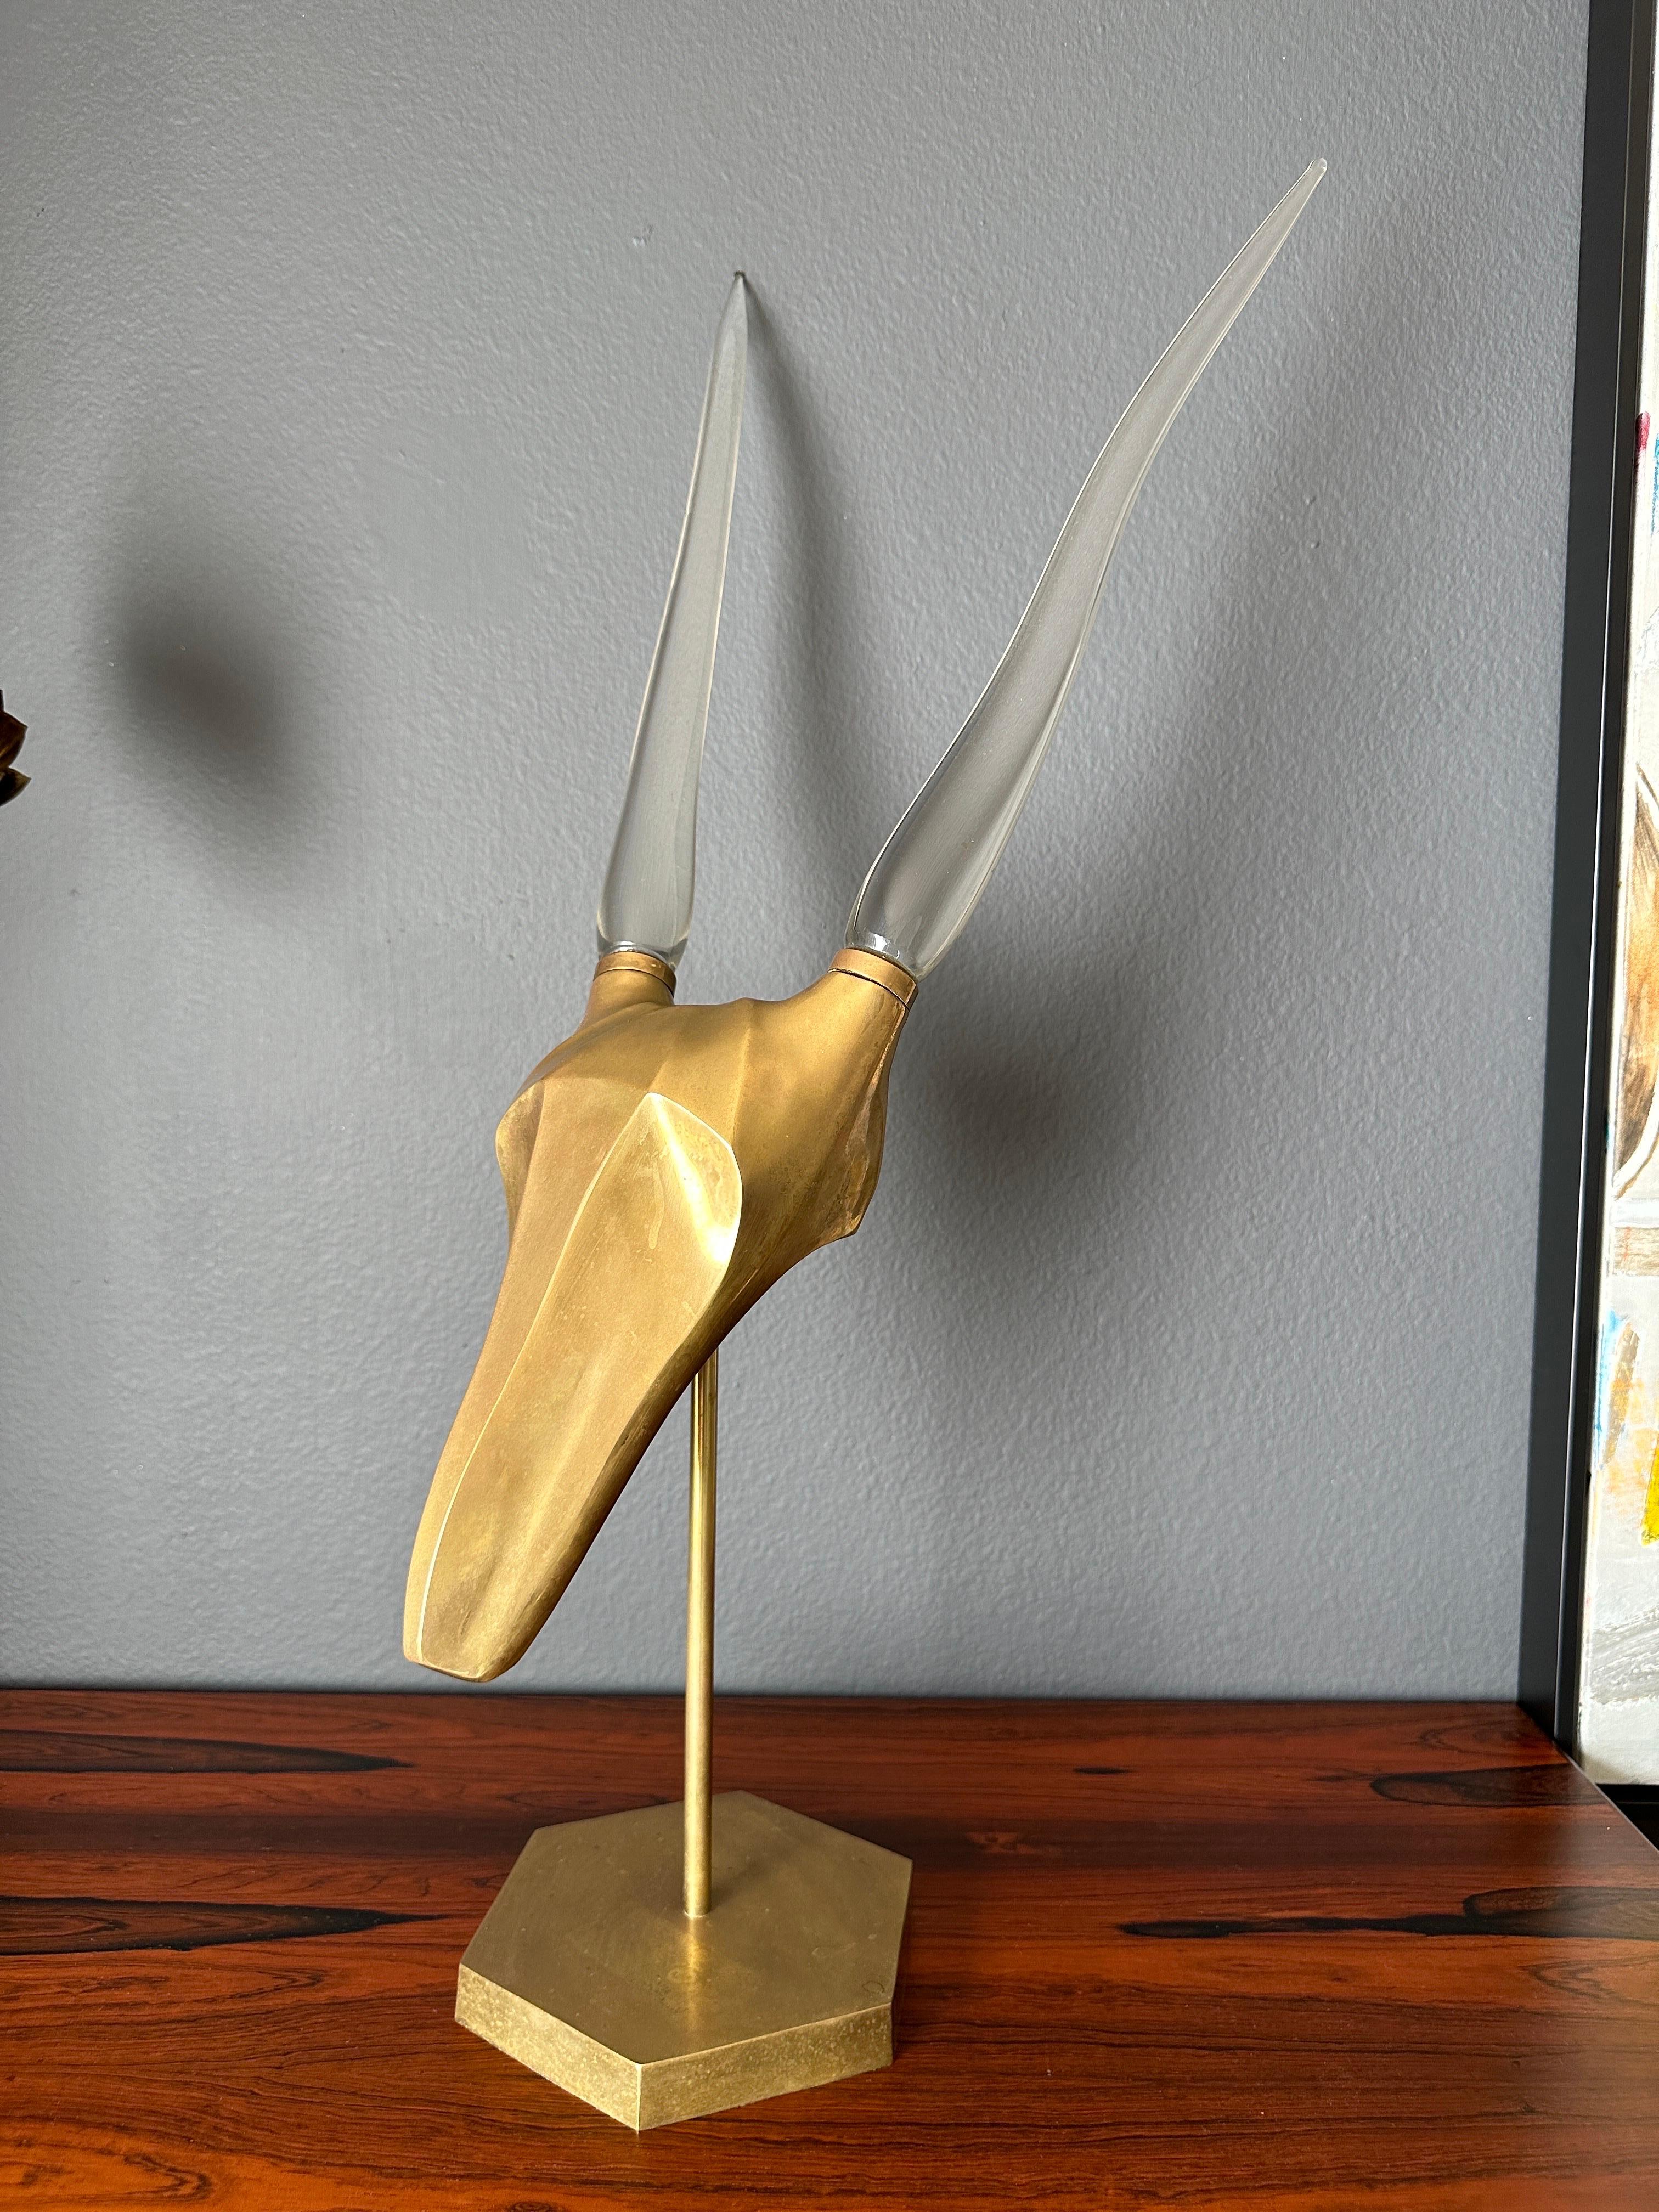 Sculpture de gazelle / antilope en laiton patiné avec cornes en verre moulé à la manière de Karl Springer.